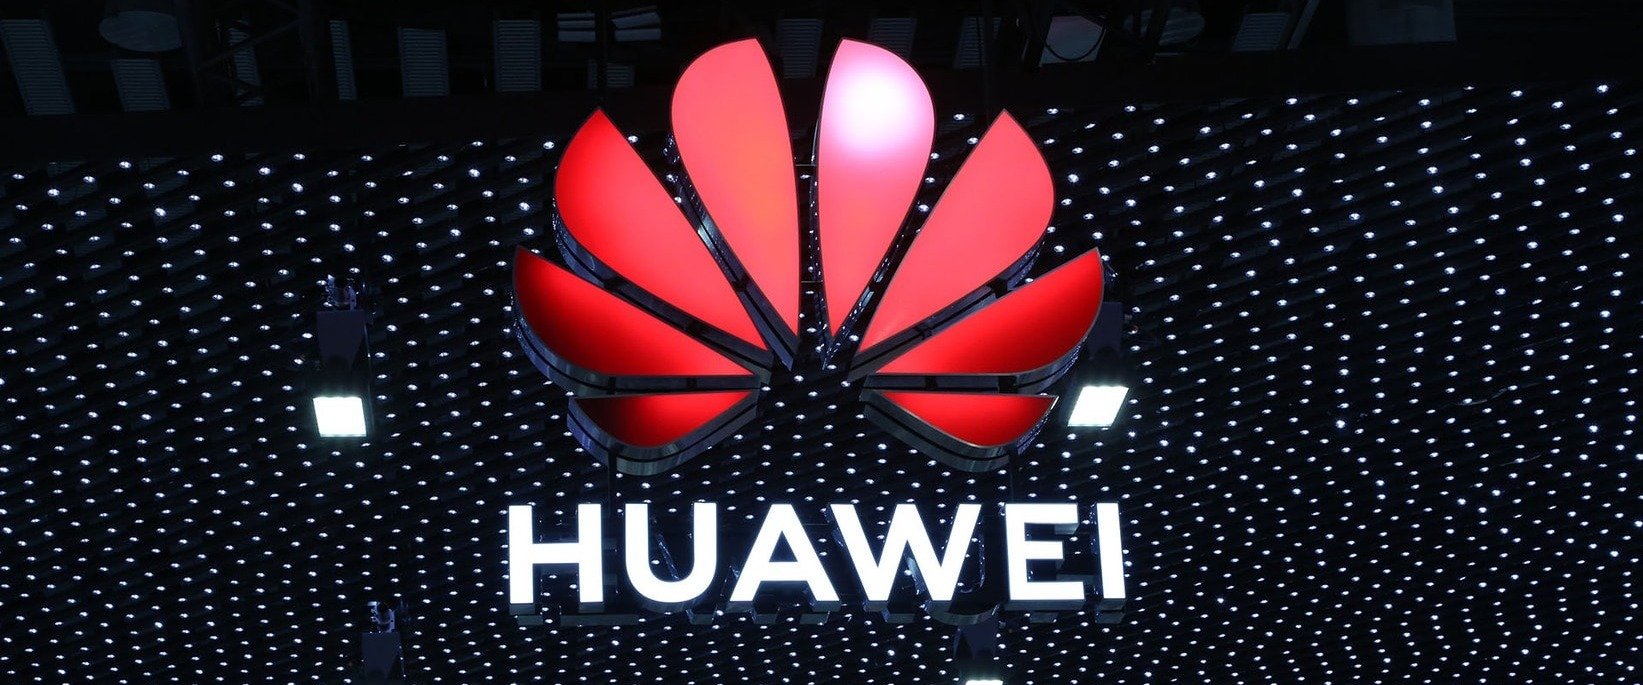 Prezes Huawei o planach inwestycyjnych, które zmienią przyszłość